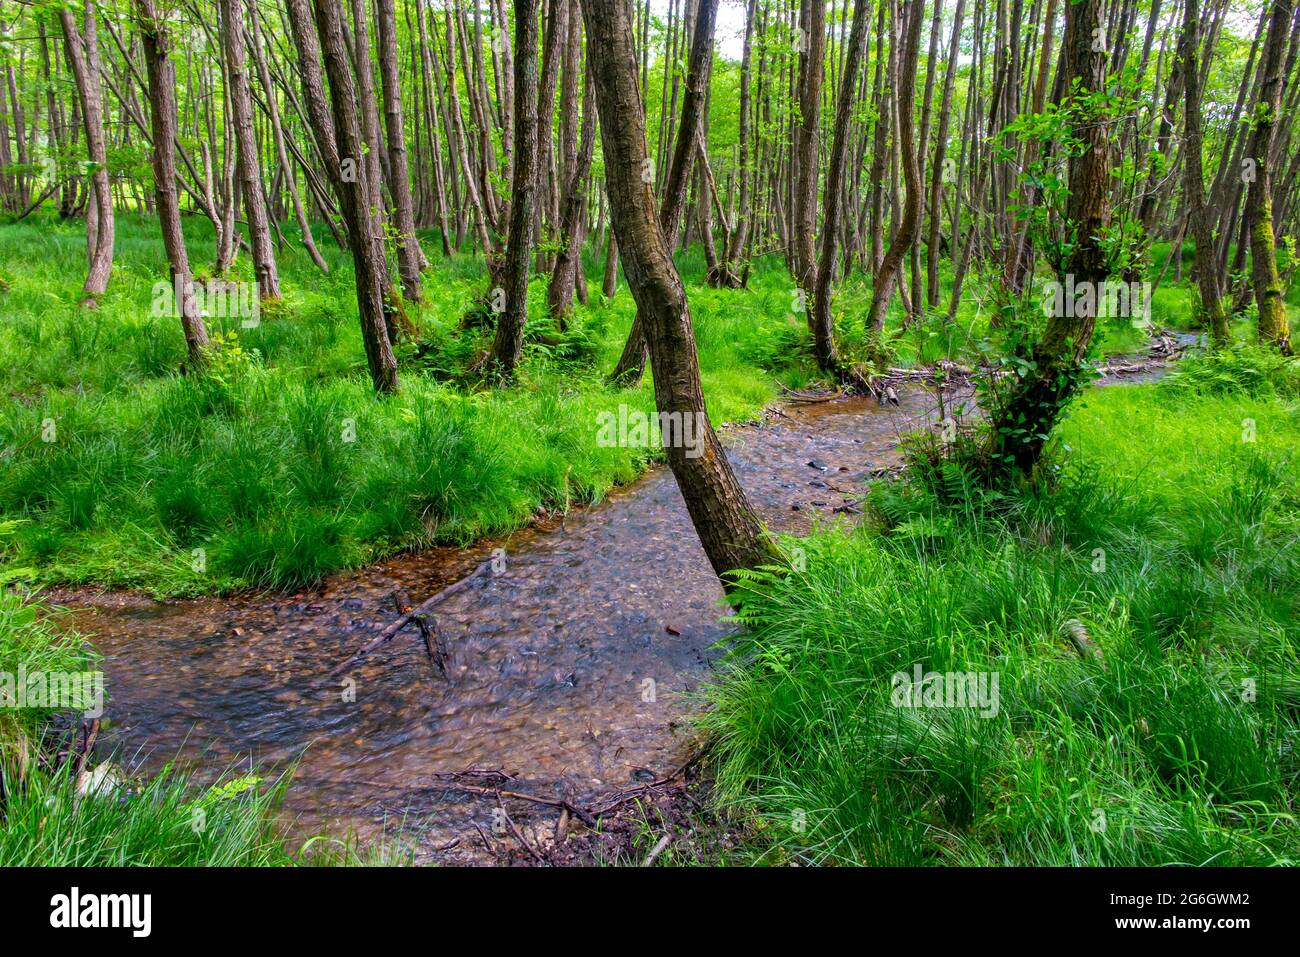 Ruisseau et arbres en été dans la région de Sherbrook Valley de Cannock Chase dans Staffordshire West Midlands Angleterre Royaume-Uni Banque D'Images